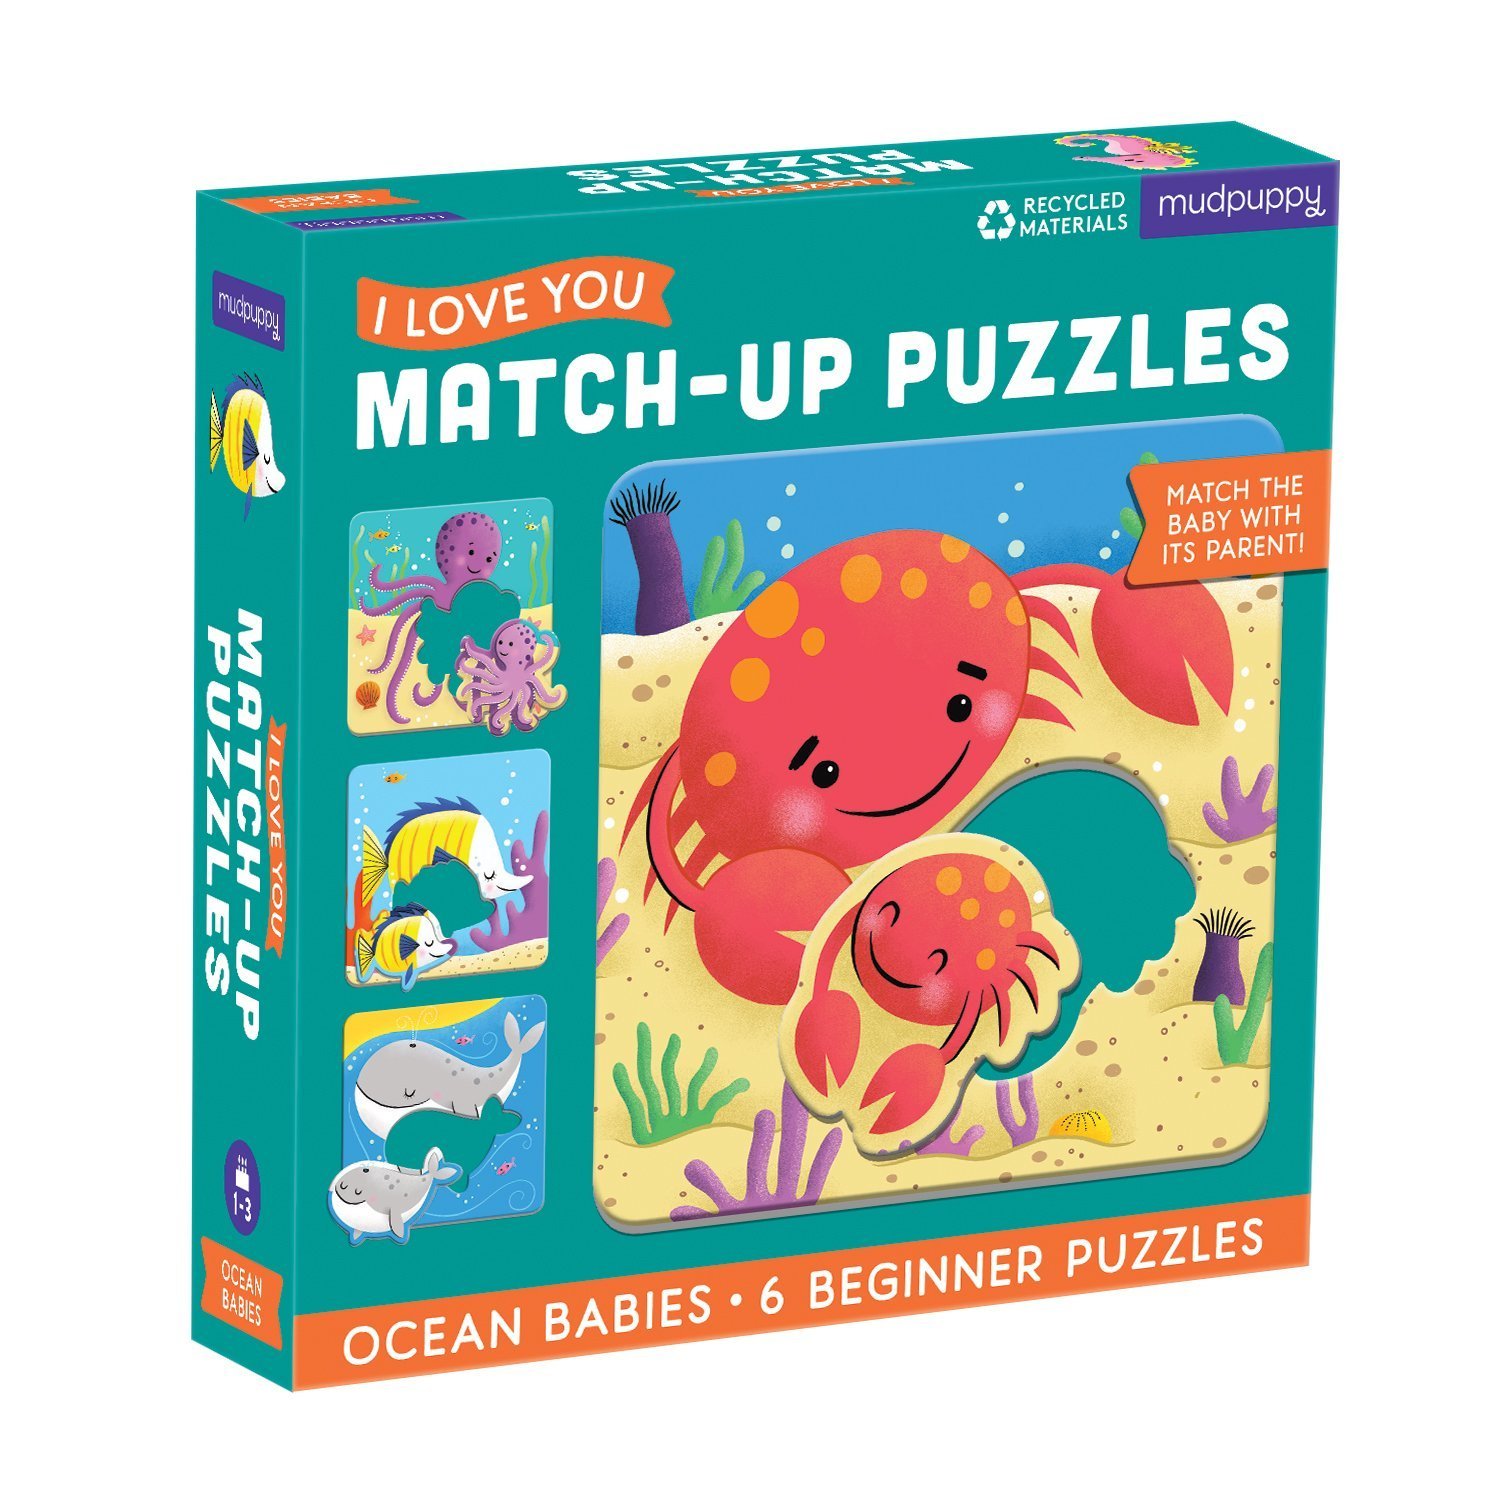 จิ๊กซอว์แม่ลูก ลายสัตว์น้ำ Ocean Babies I Love You Match-Up Puzzles แบรนด์ Mudpuppy